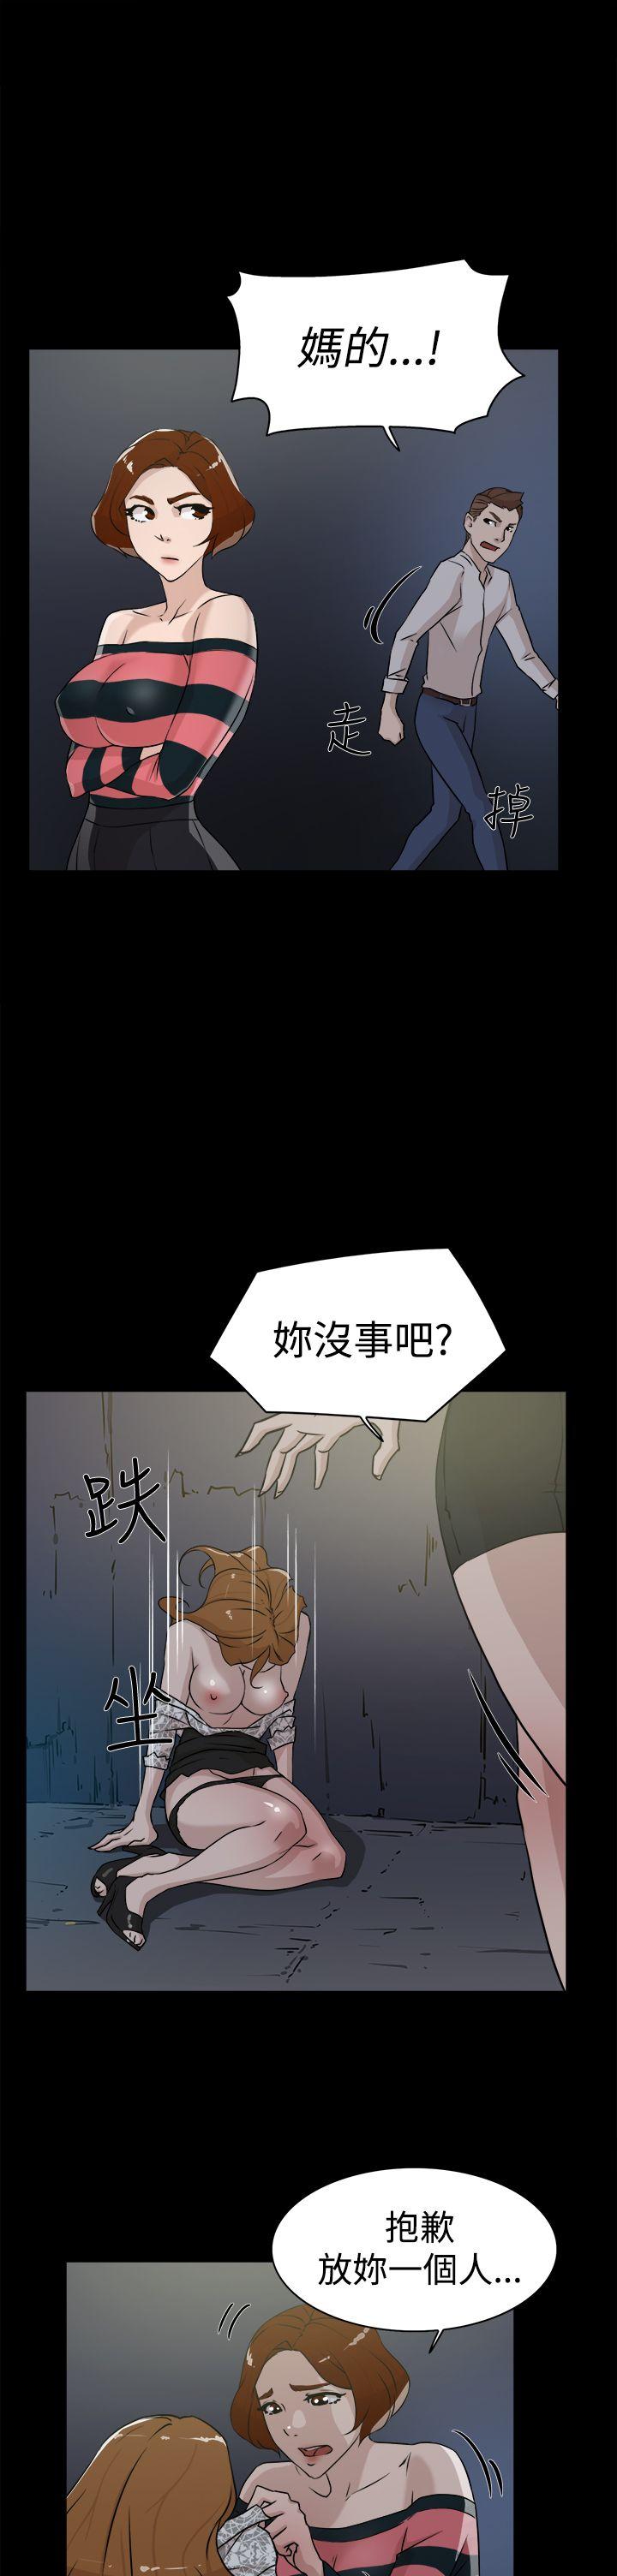 韩国污漫画 她的高跟鞋(無刪減) 第25话 13